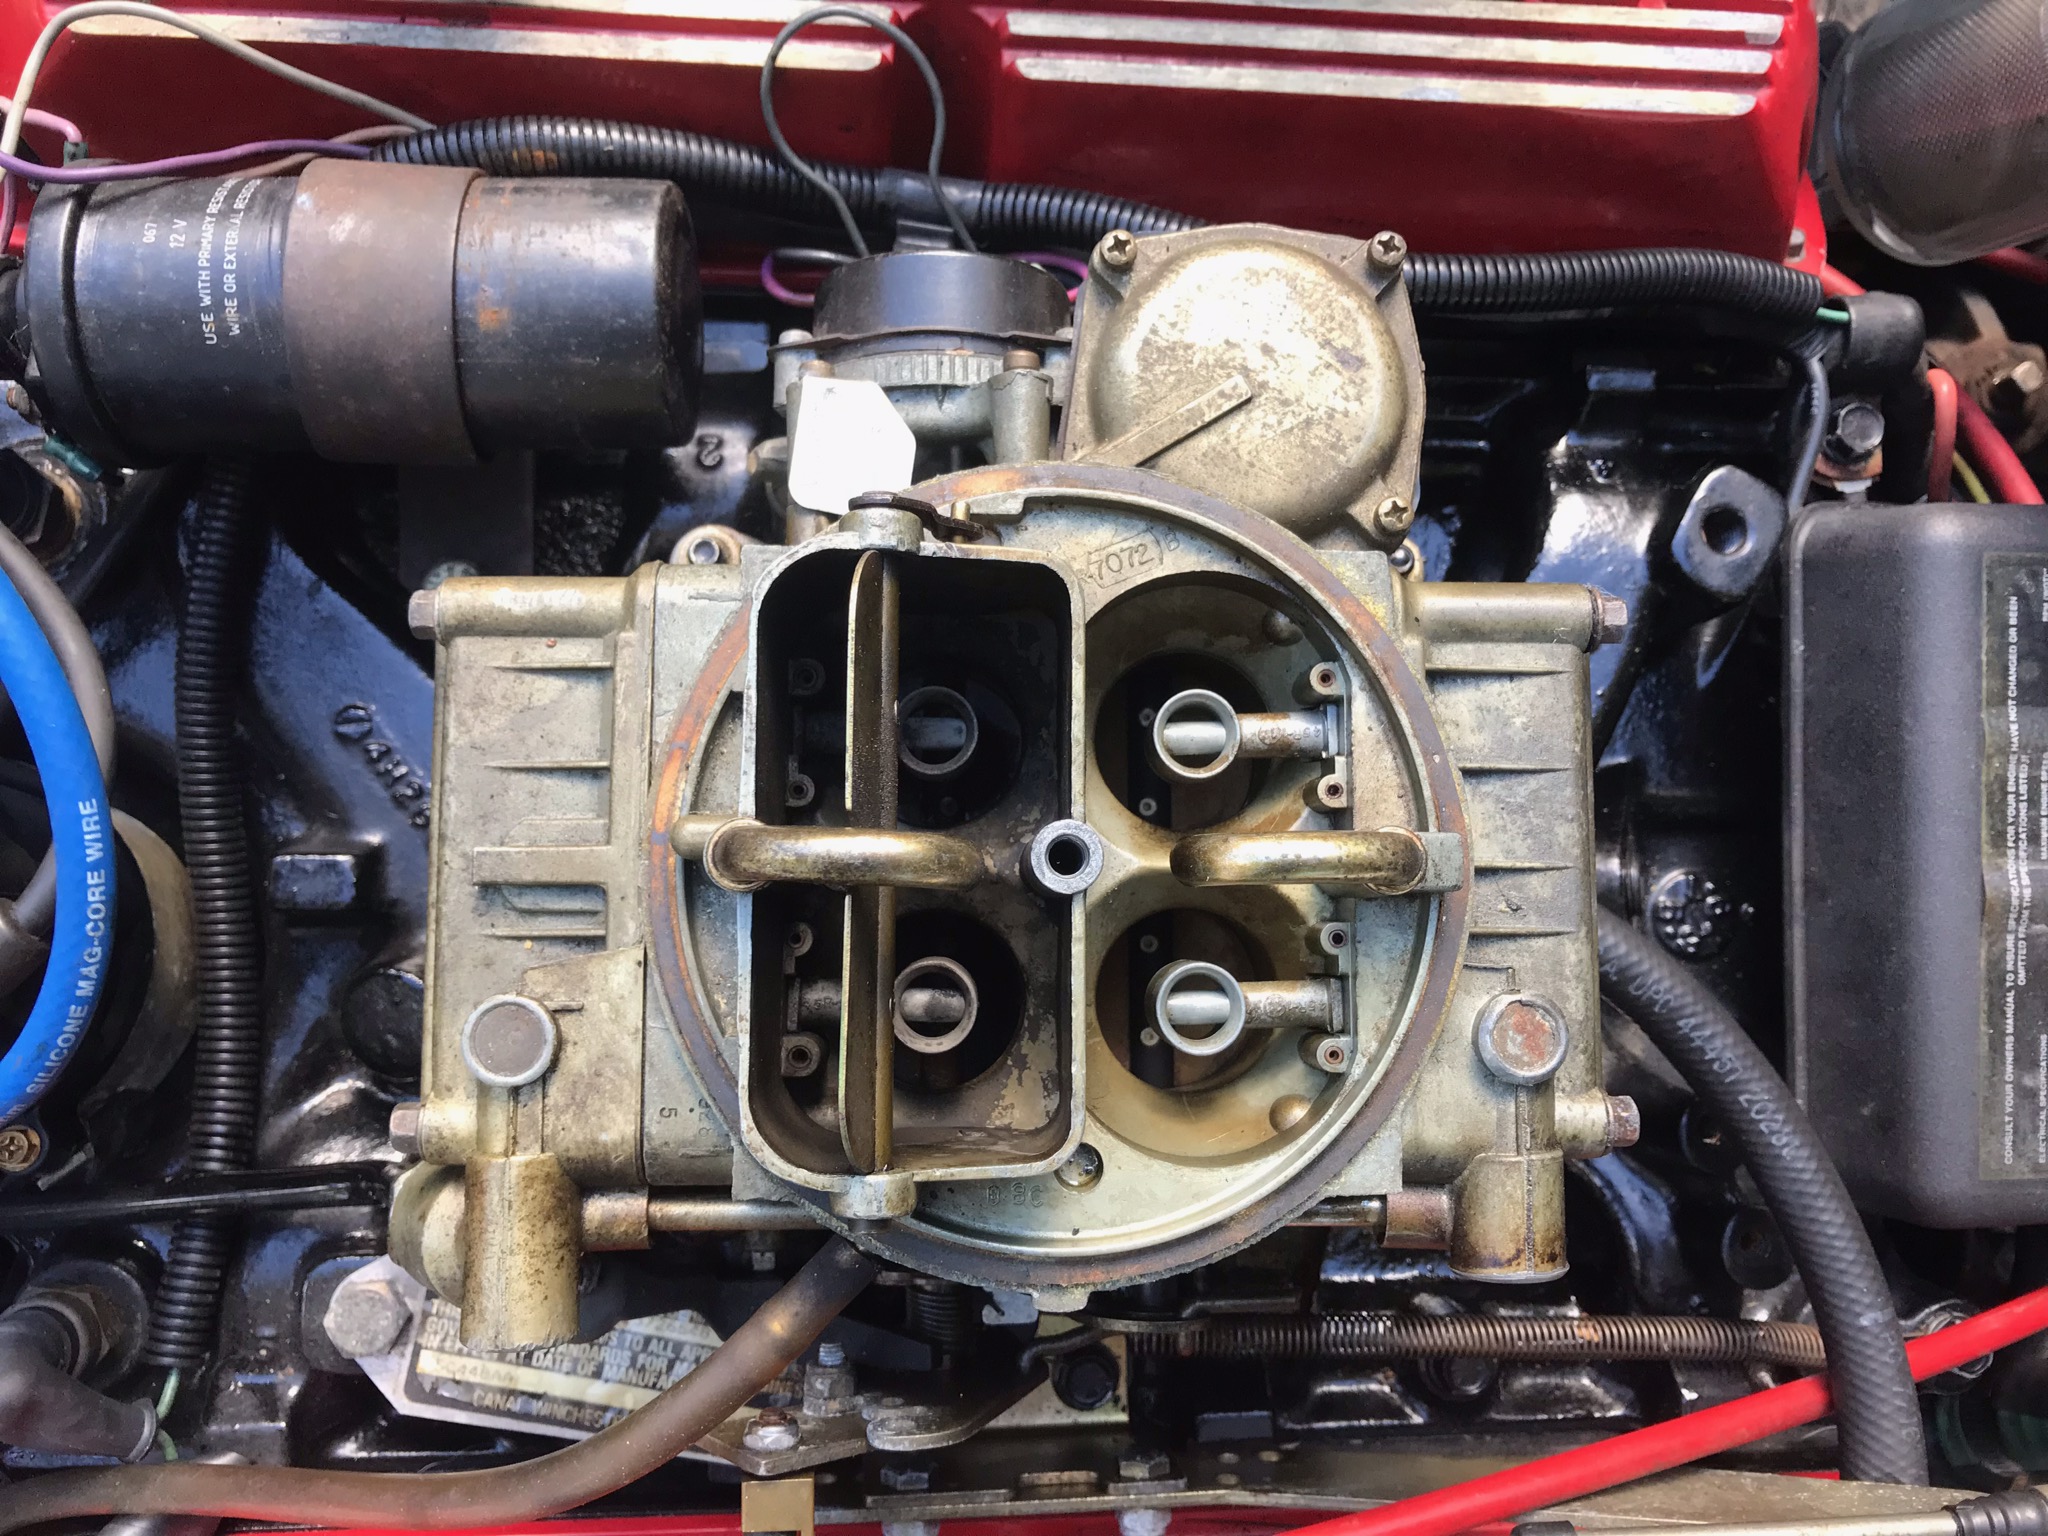 CK829 Carburetor Kit for Holley 4150/4160 carburetor.